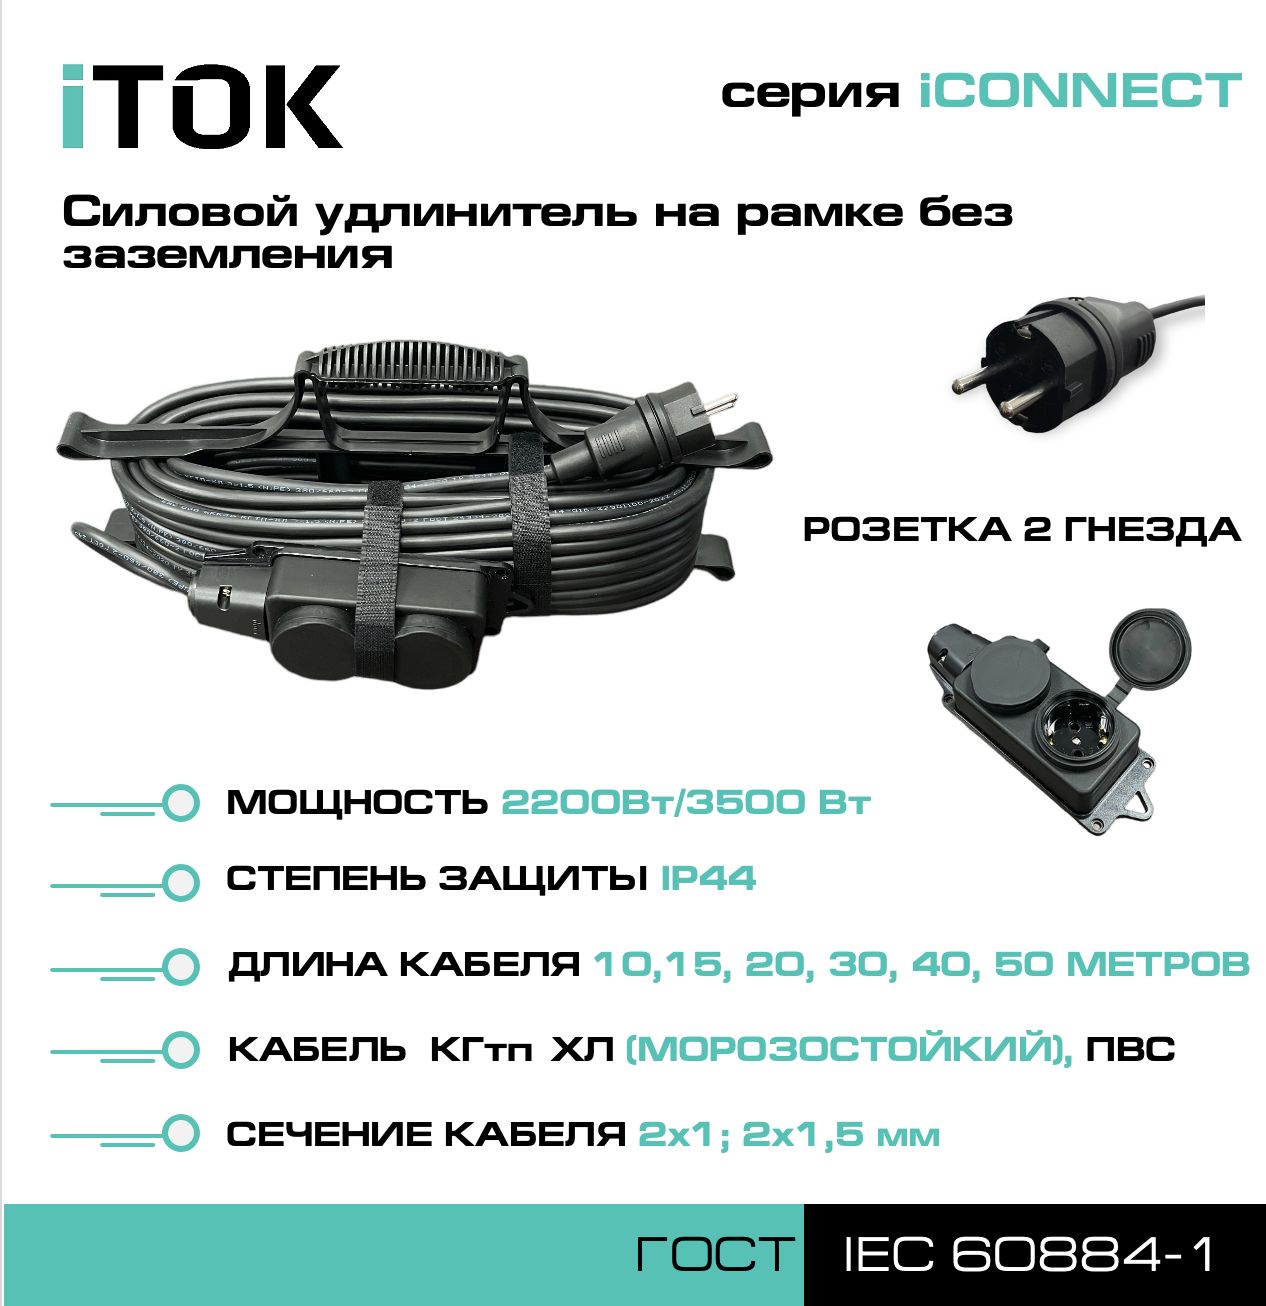 Удлинитель на рамке с заземлением серии iTOK iCONNECT ПВС 3х2,5 мм 2 гнезда IP44 20 м